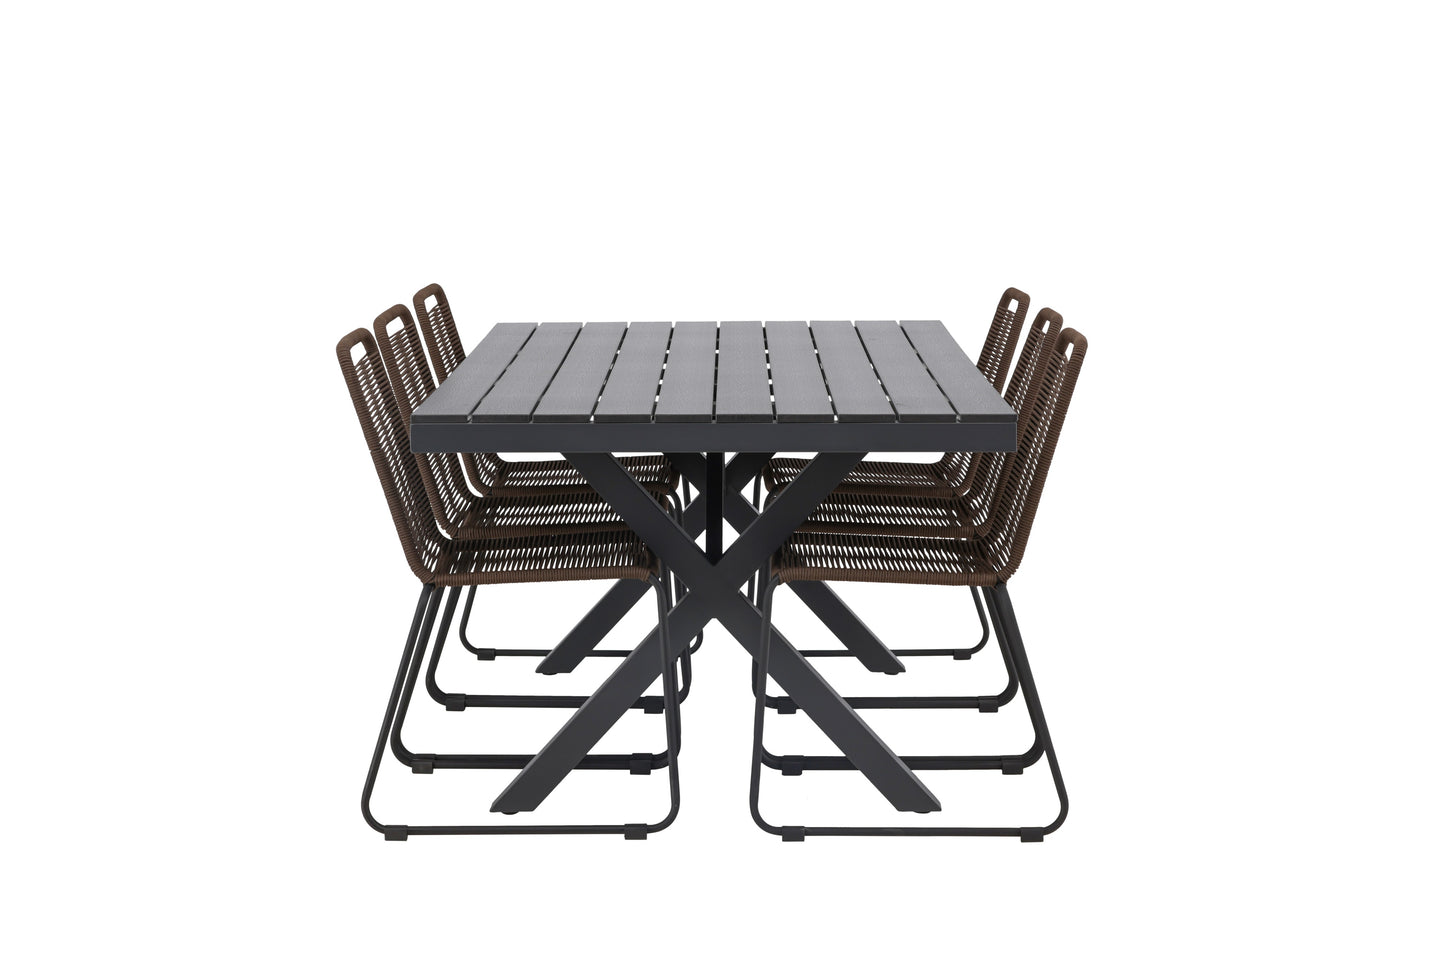 Garcia - Spisebord, Aluminium - Sort / Rektangulær 100*200* + Lidos stol Aluminium - Sort